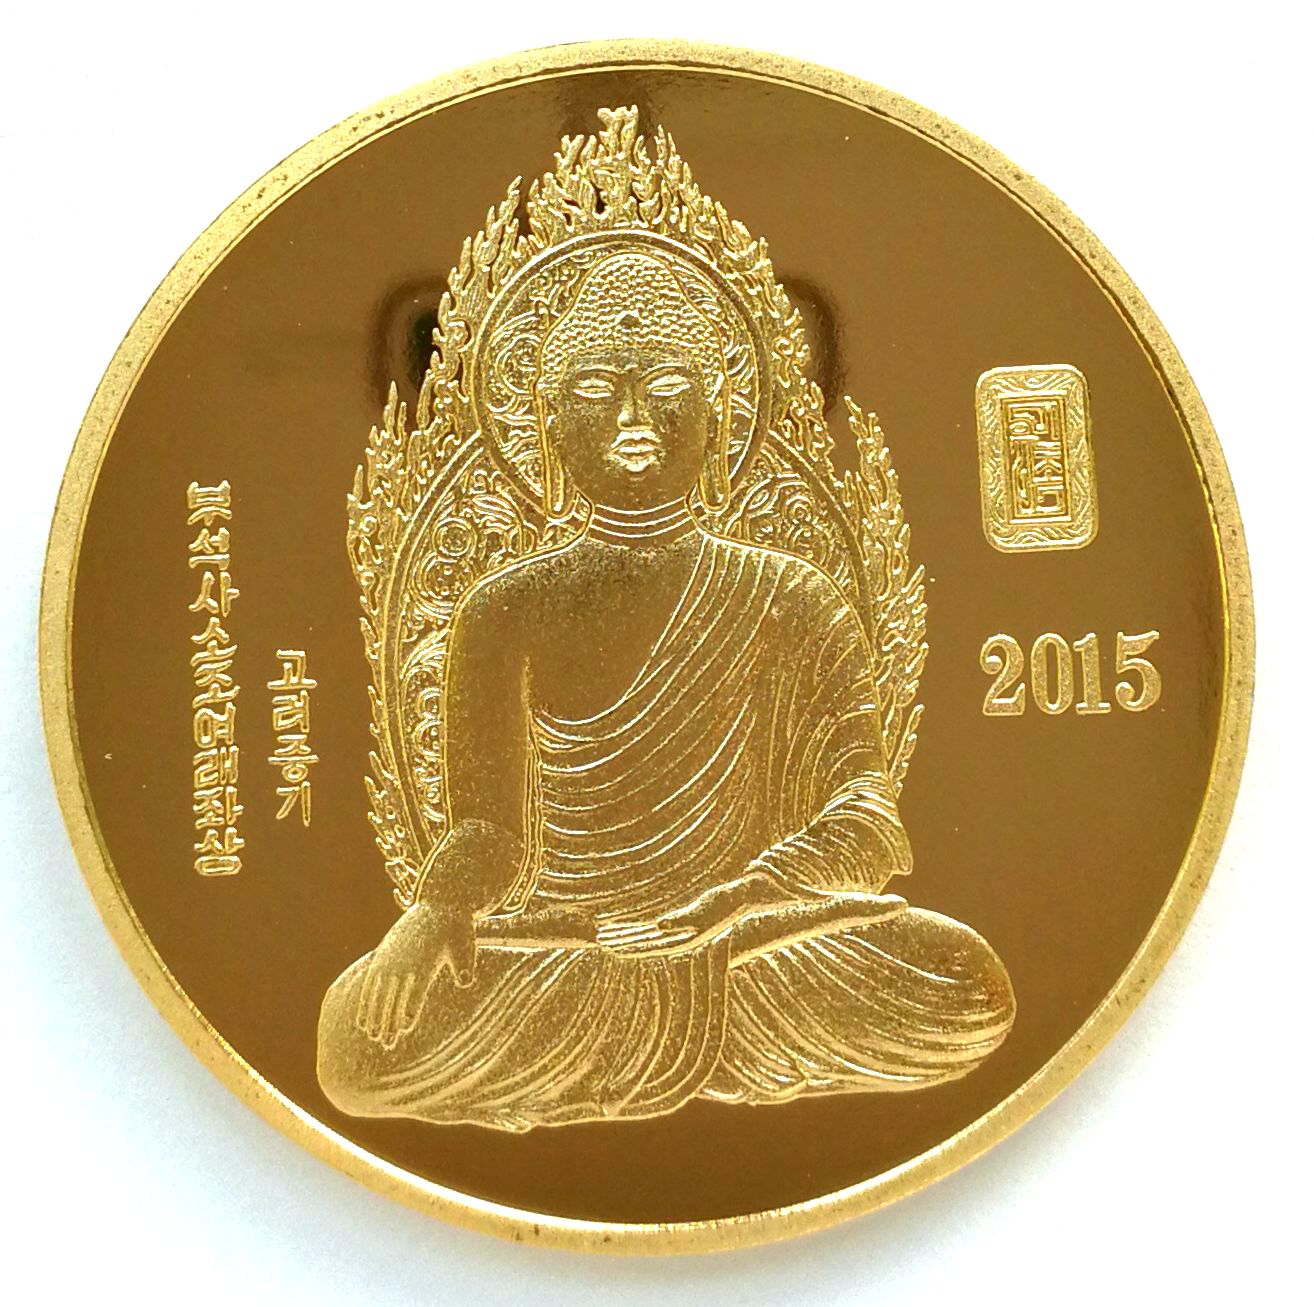 L3205, Korea Buddhism Brass Commemorative Coin, 2015